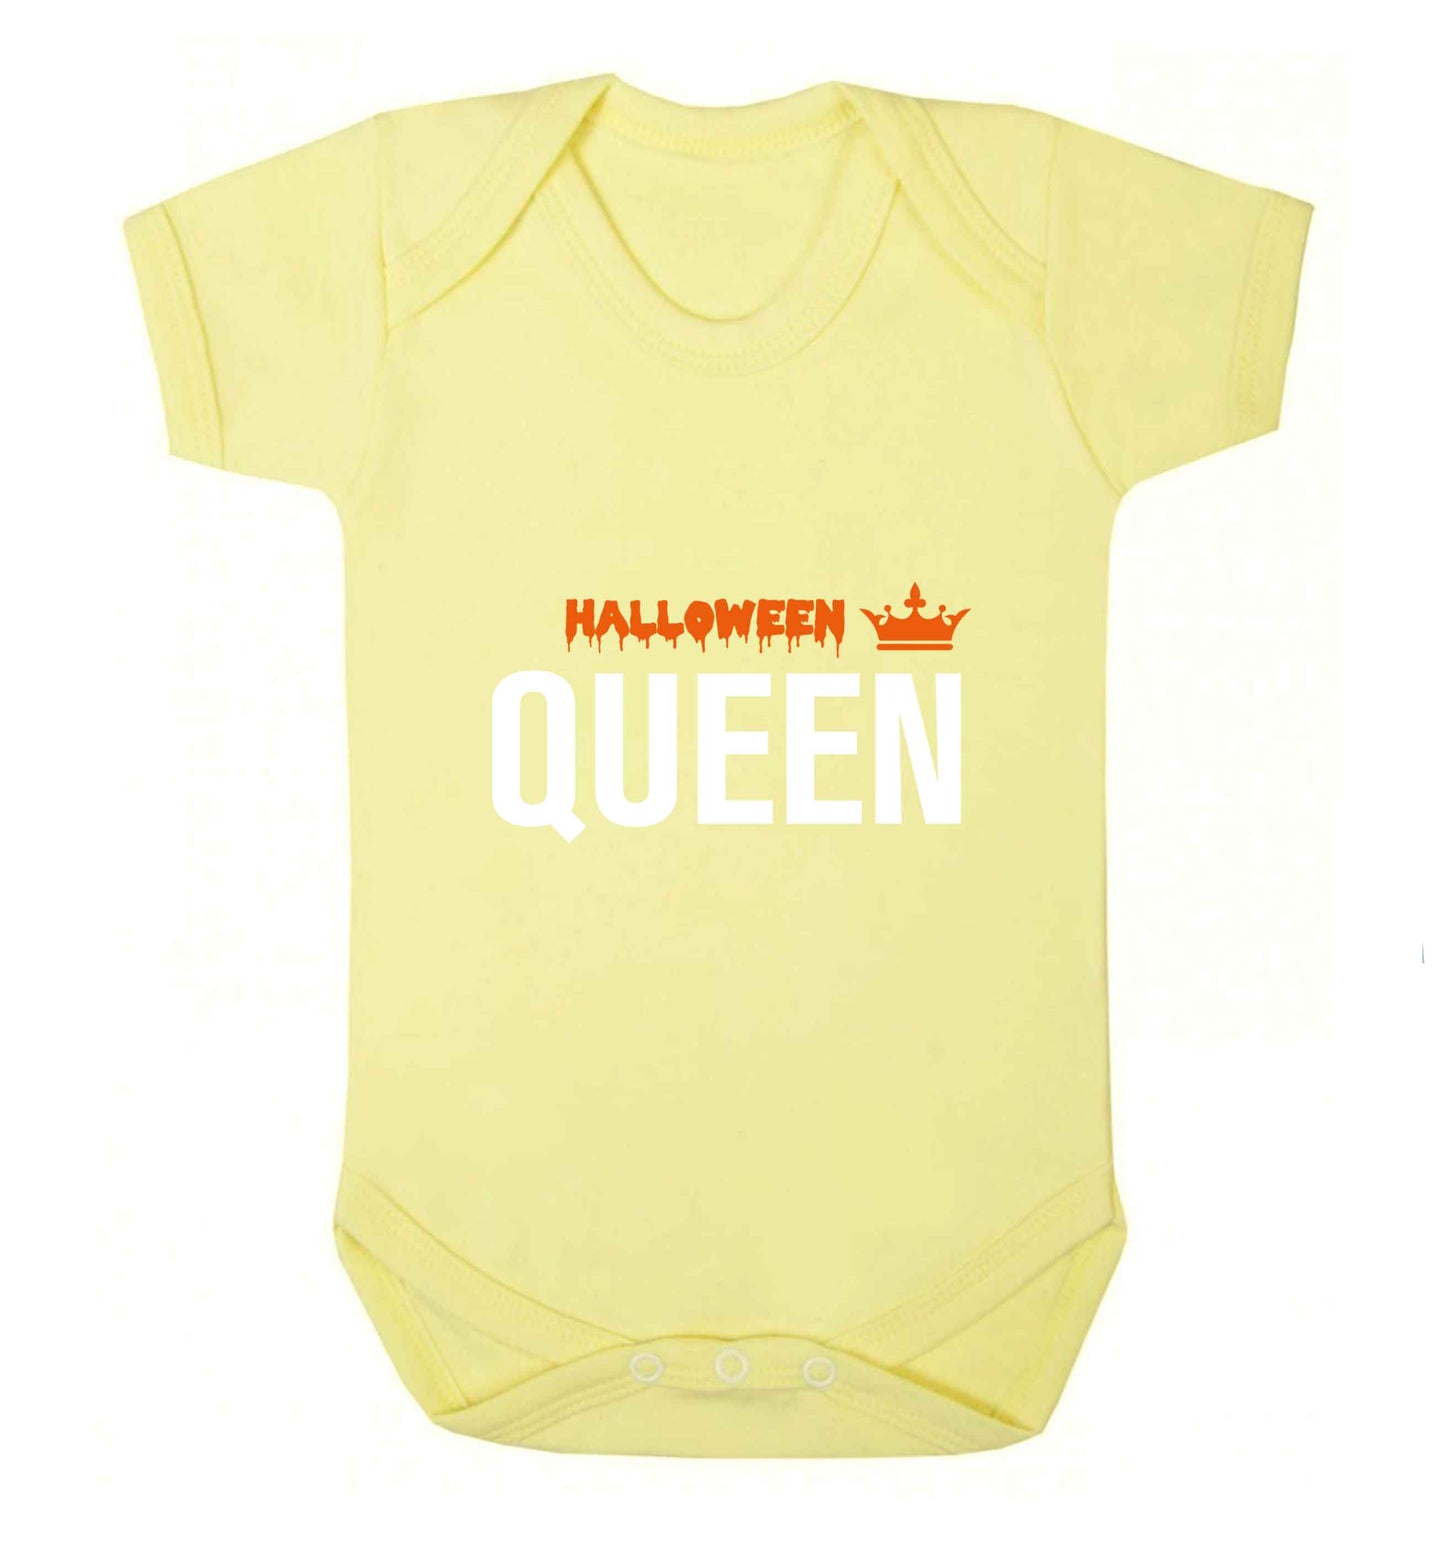 Halloween queen baby vest pale yellow 18-24 months